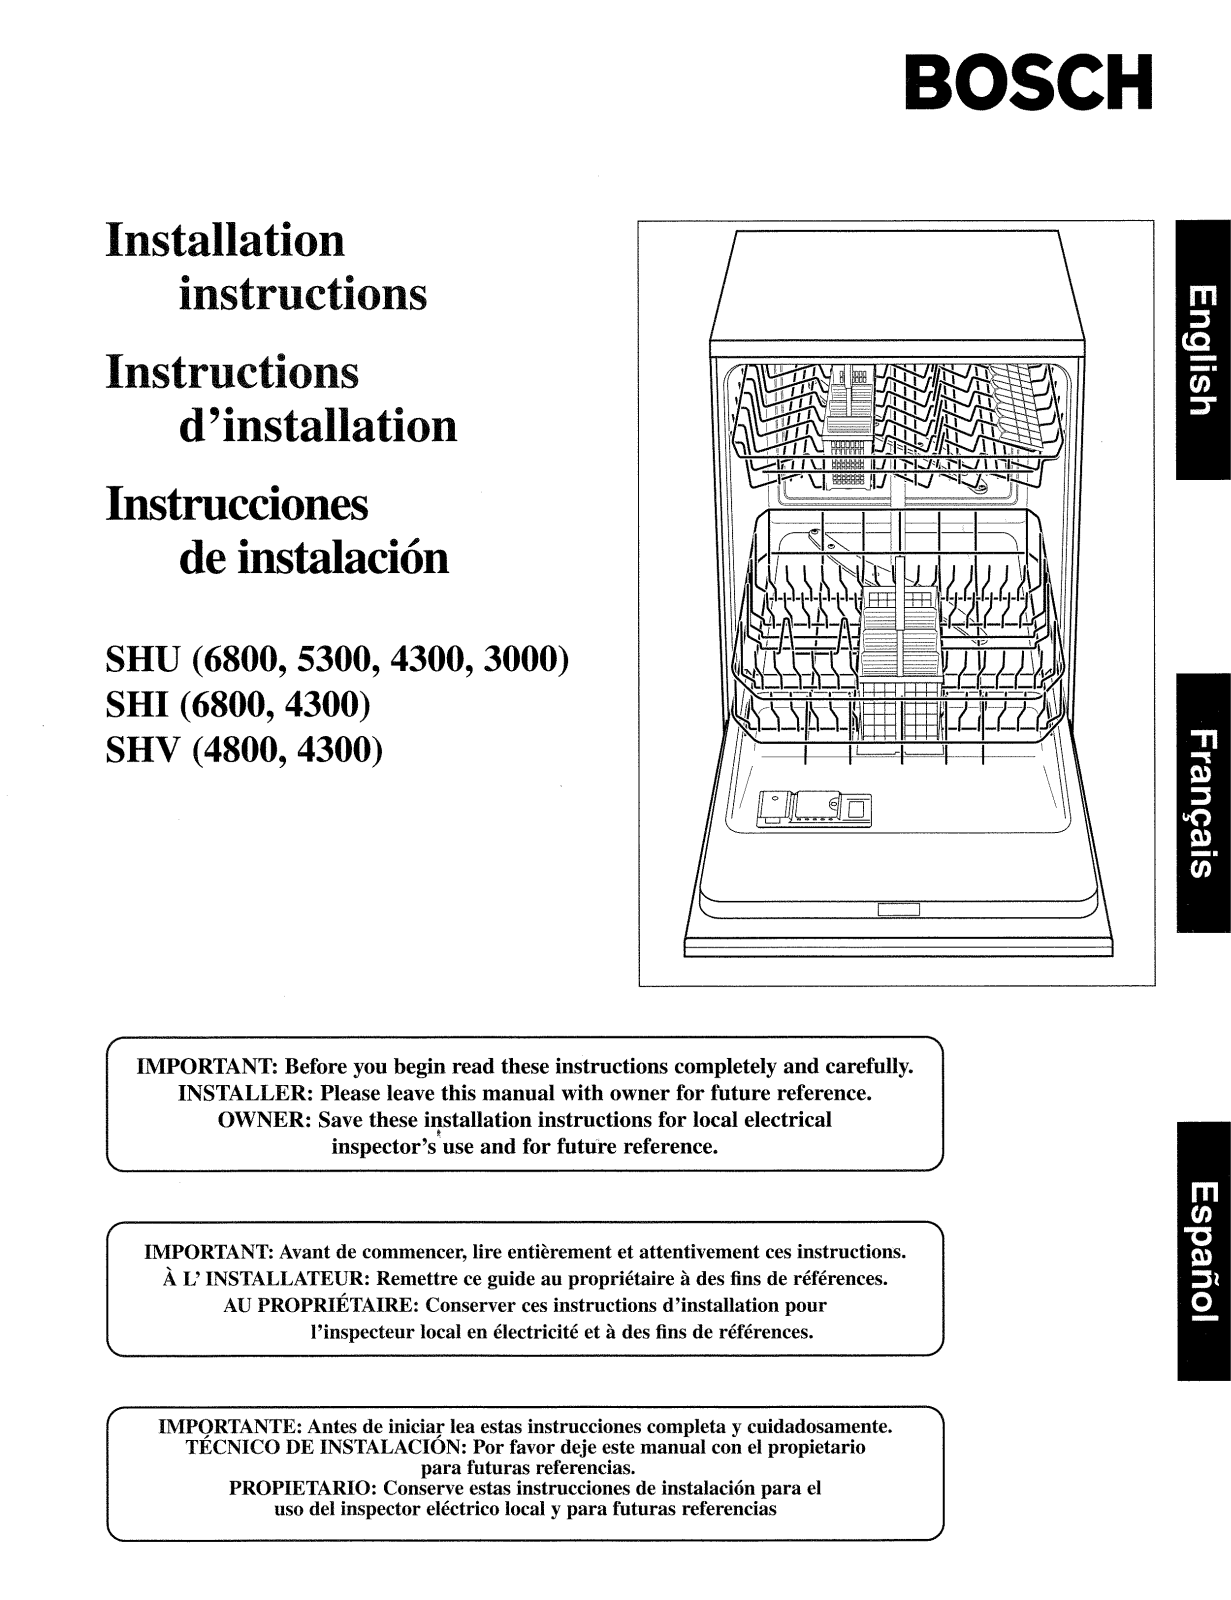 Bosch SHU5302UC/06, SHU5302UC/10, SHU5302UC/11 Installation Guide